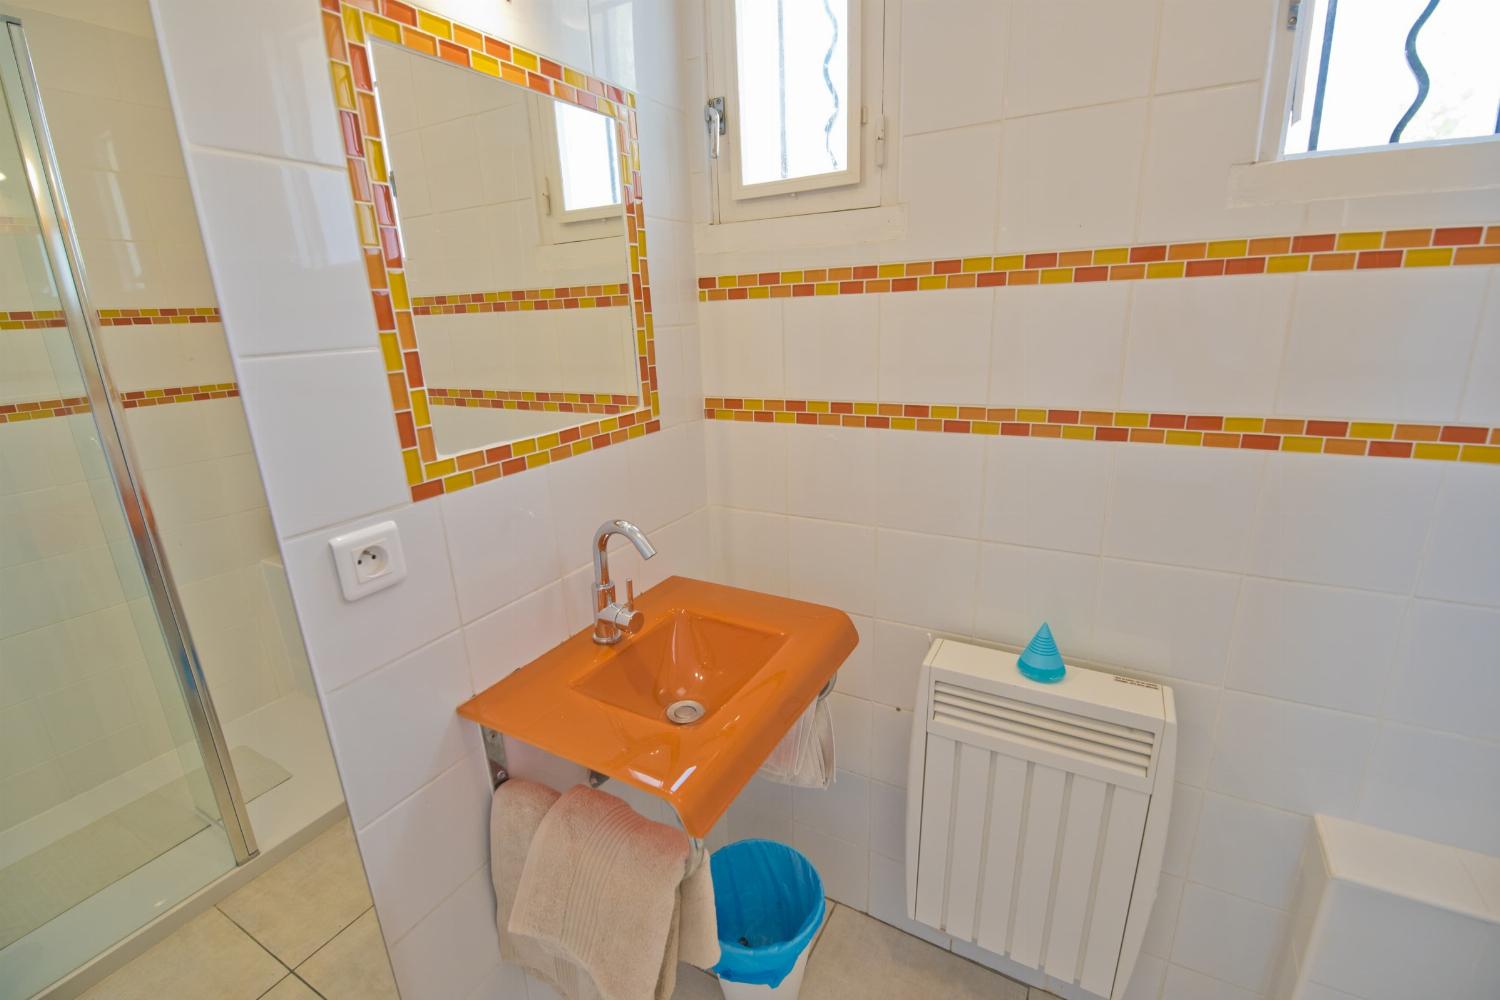 Salle de bain | Location maison dans le sud de la France